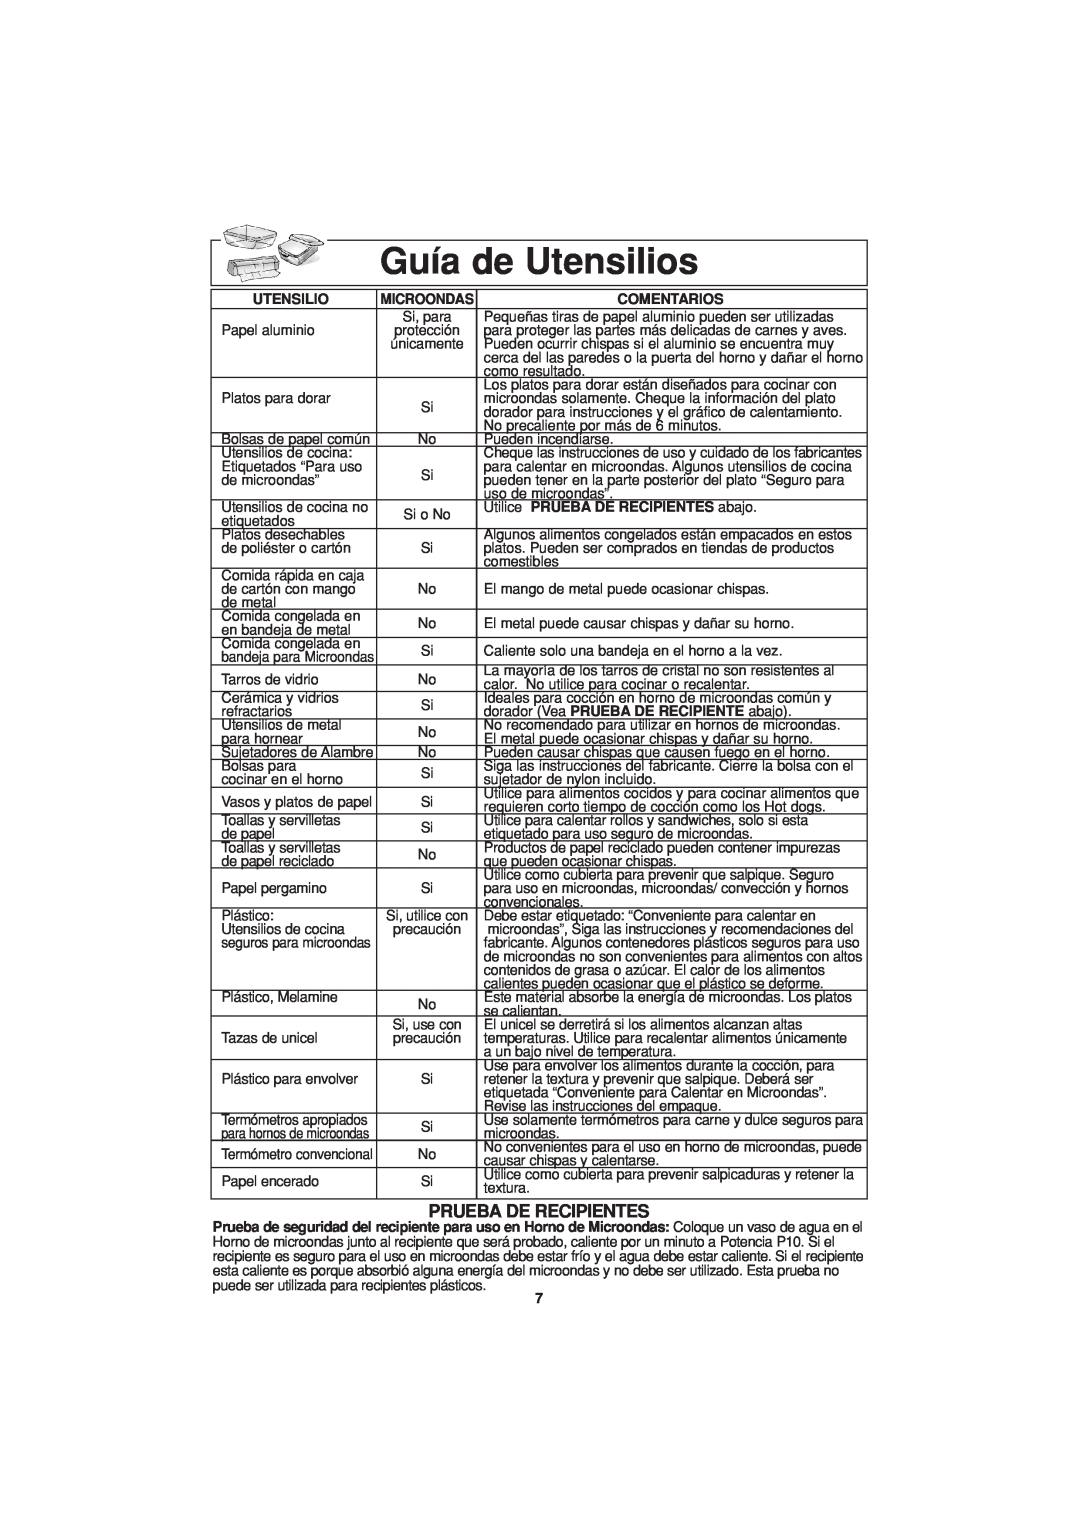 Panasonic NN-H624 operating instructions Guía de Utensilios, Prueba De Recipientes 